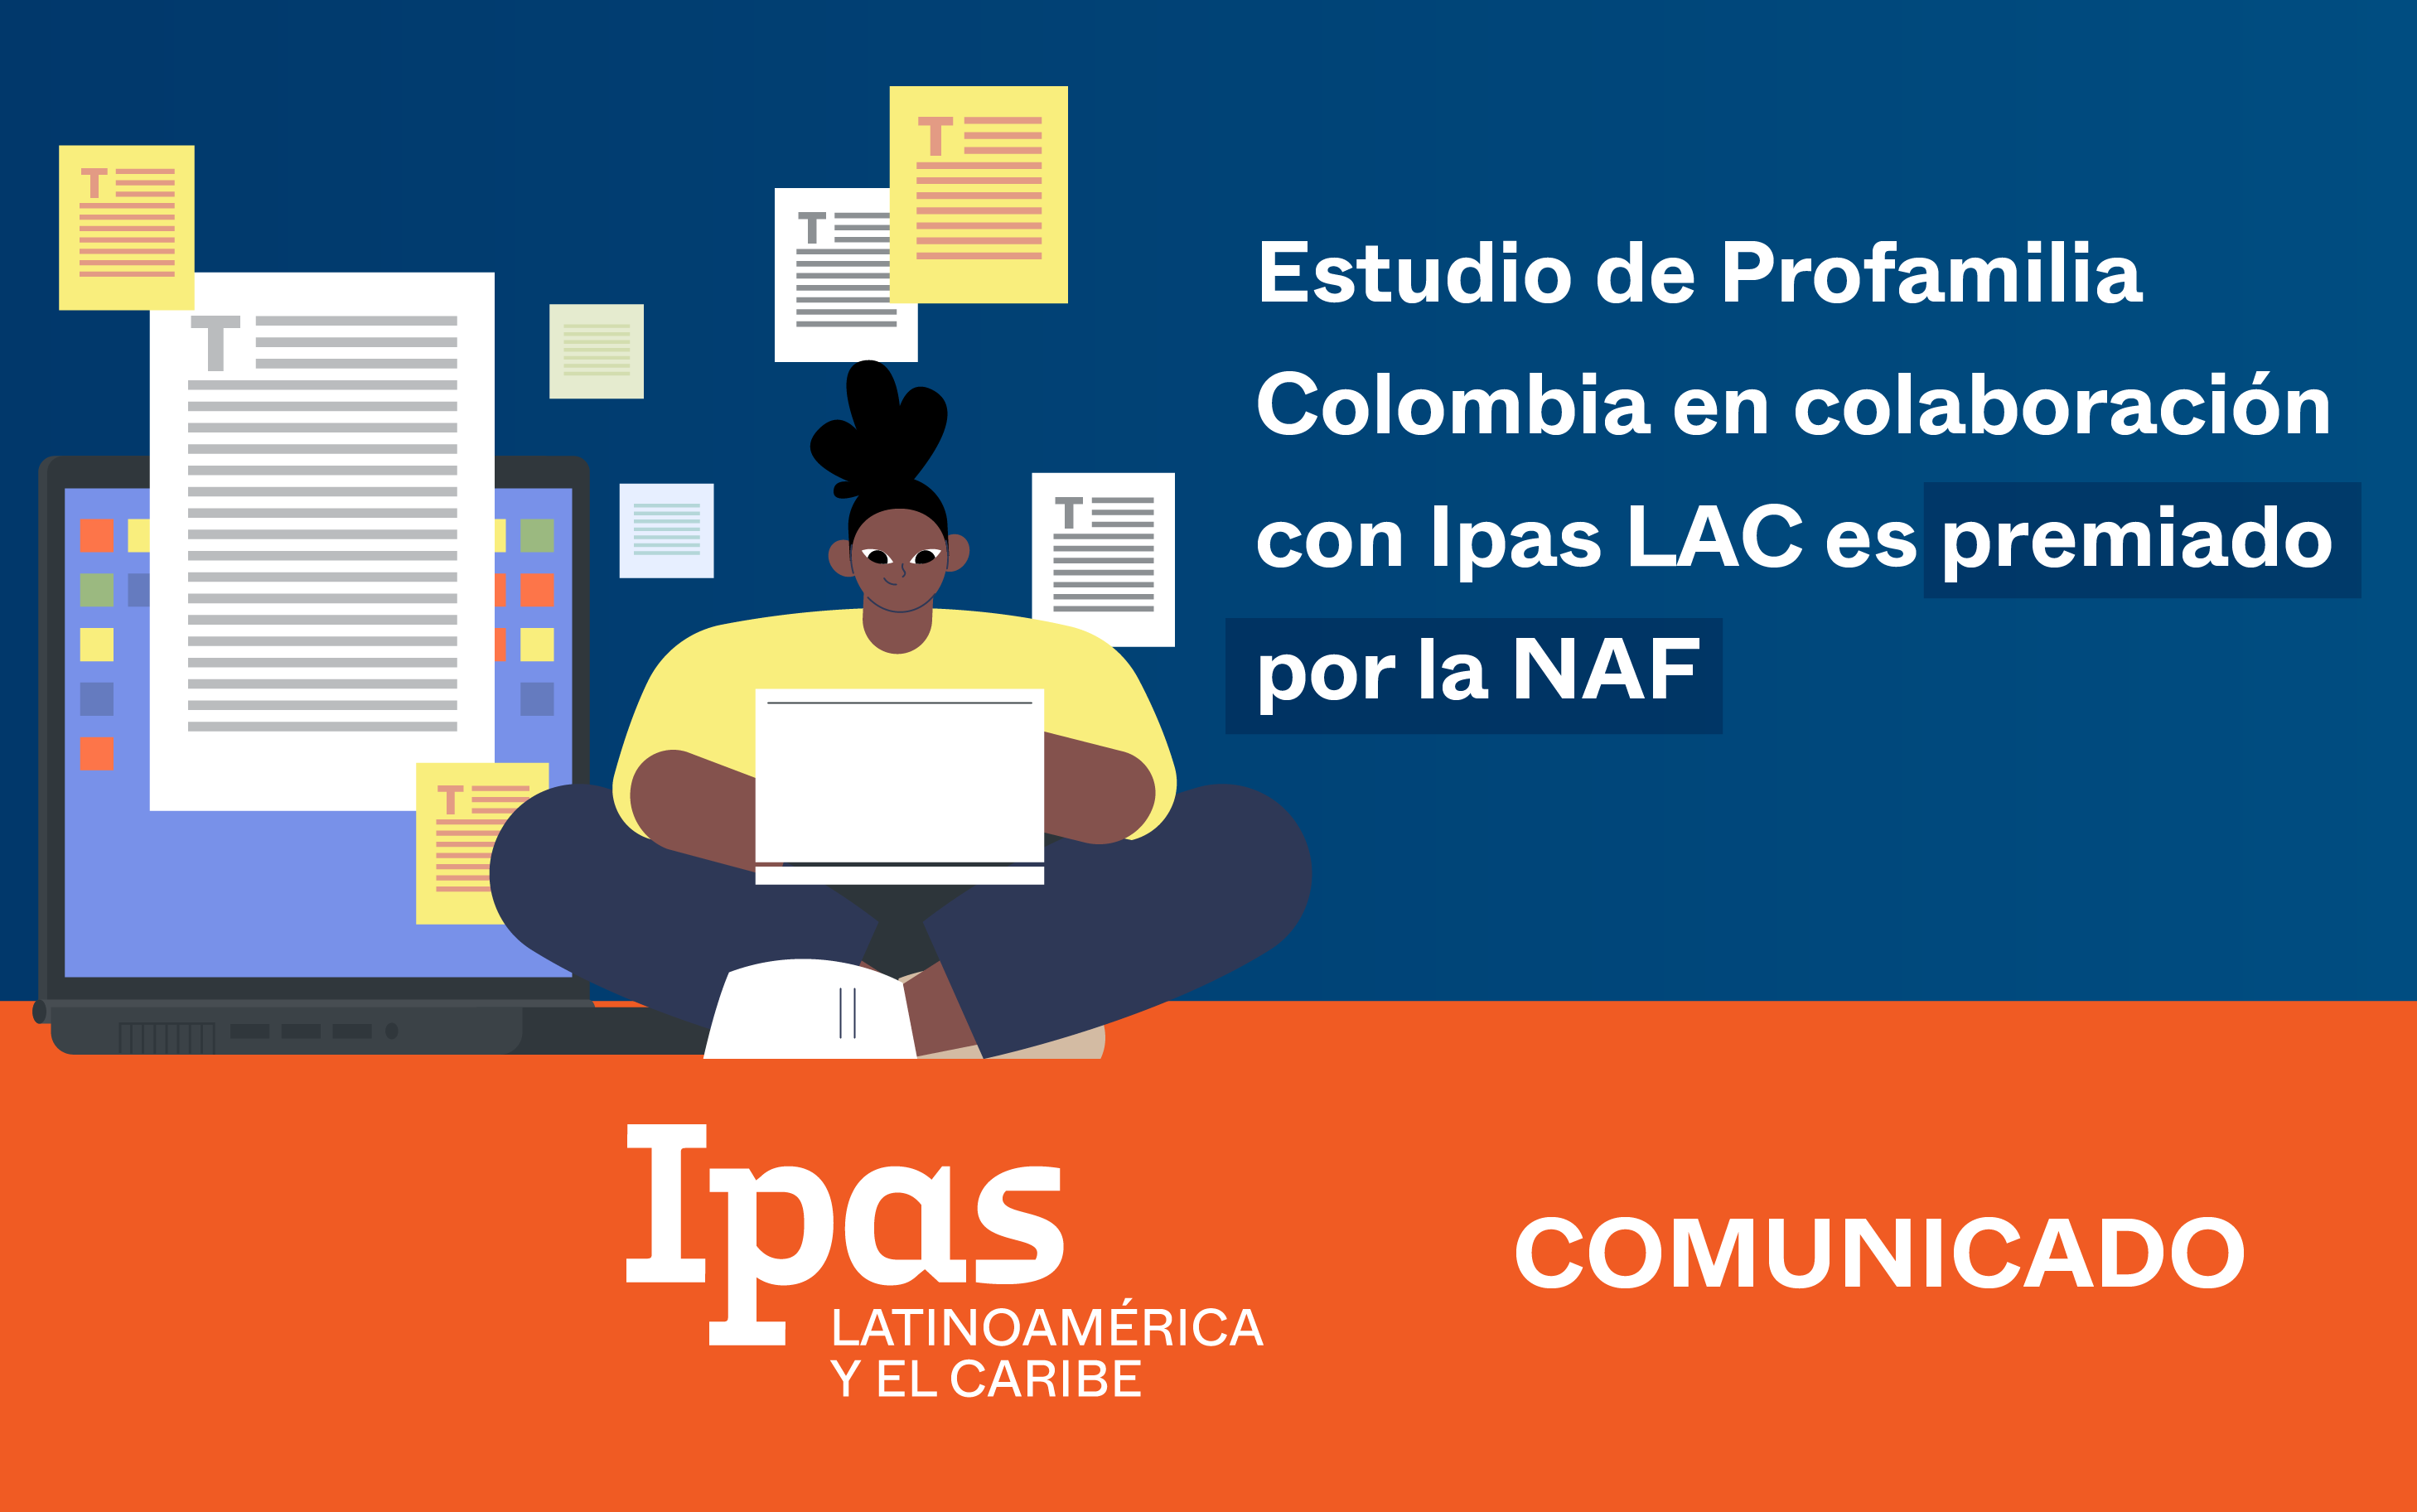 Estudio de Profamilia en colaboración con Ipas LAC es premiado por la NAF